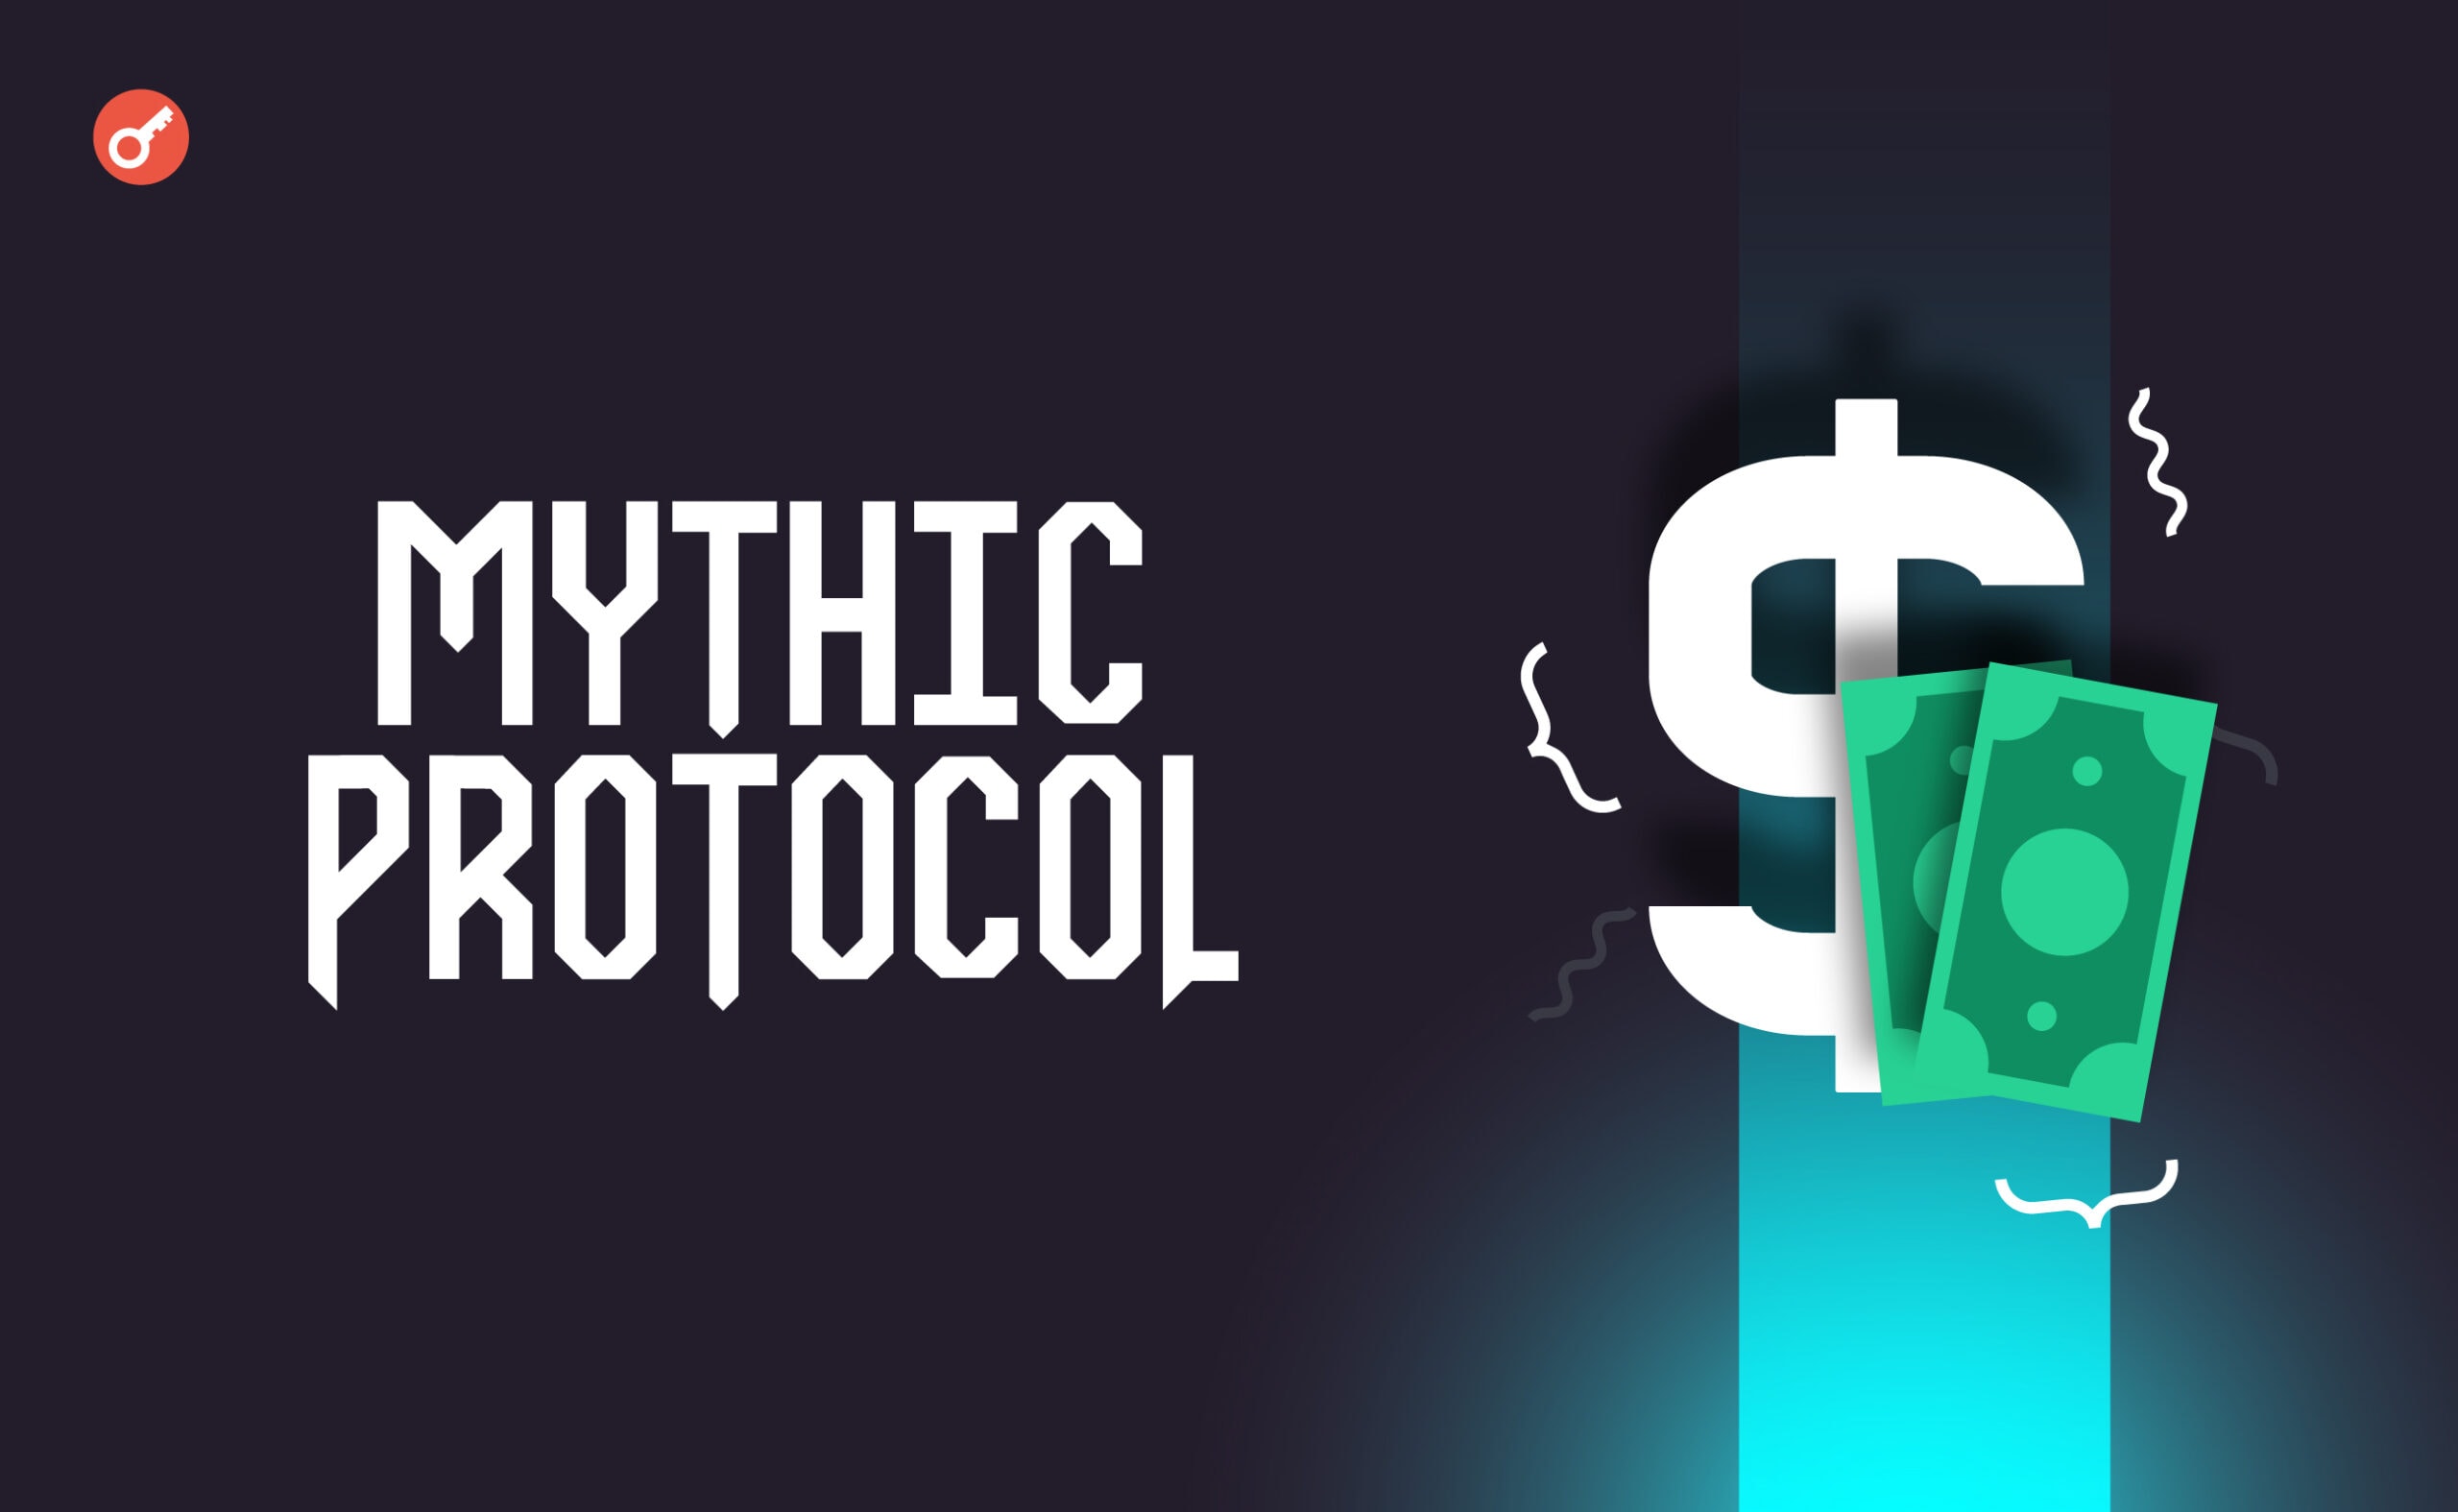 Mythic Protocol залучив $6,5 млн інвестицій. Головний колаж новини.